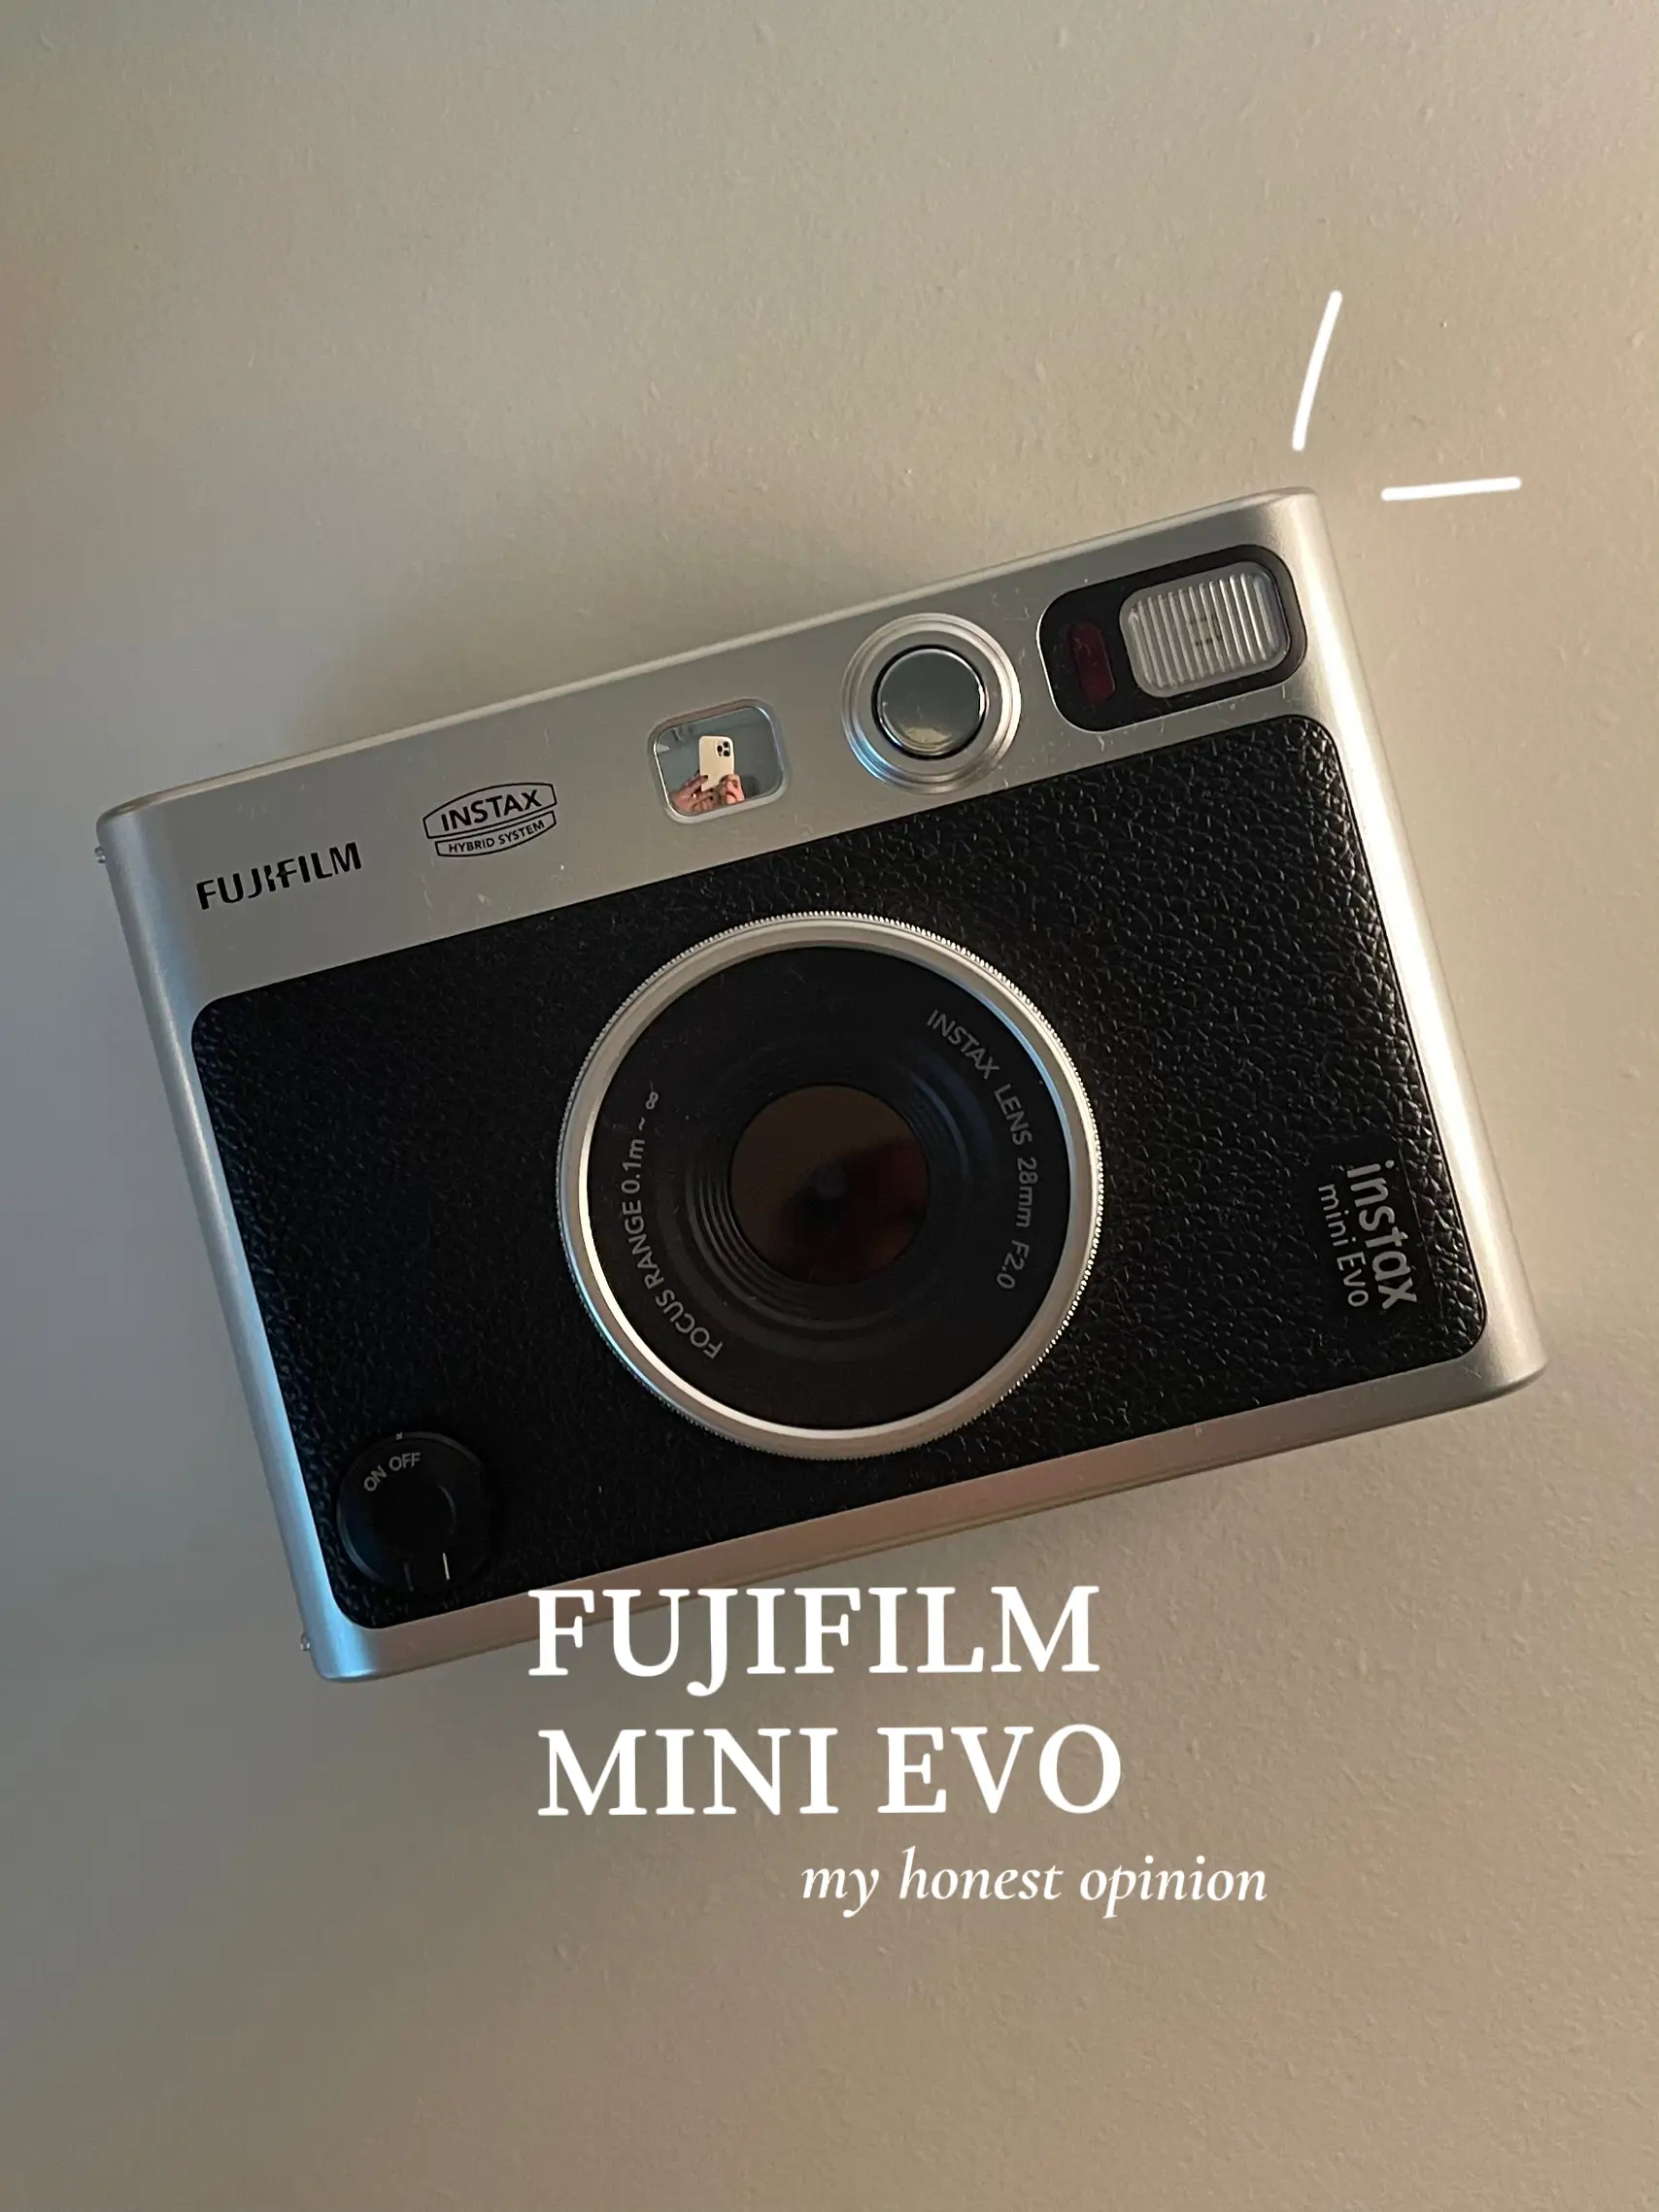 INSTAX mini Evo - INSTAX by Fujifilm (UK)